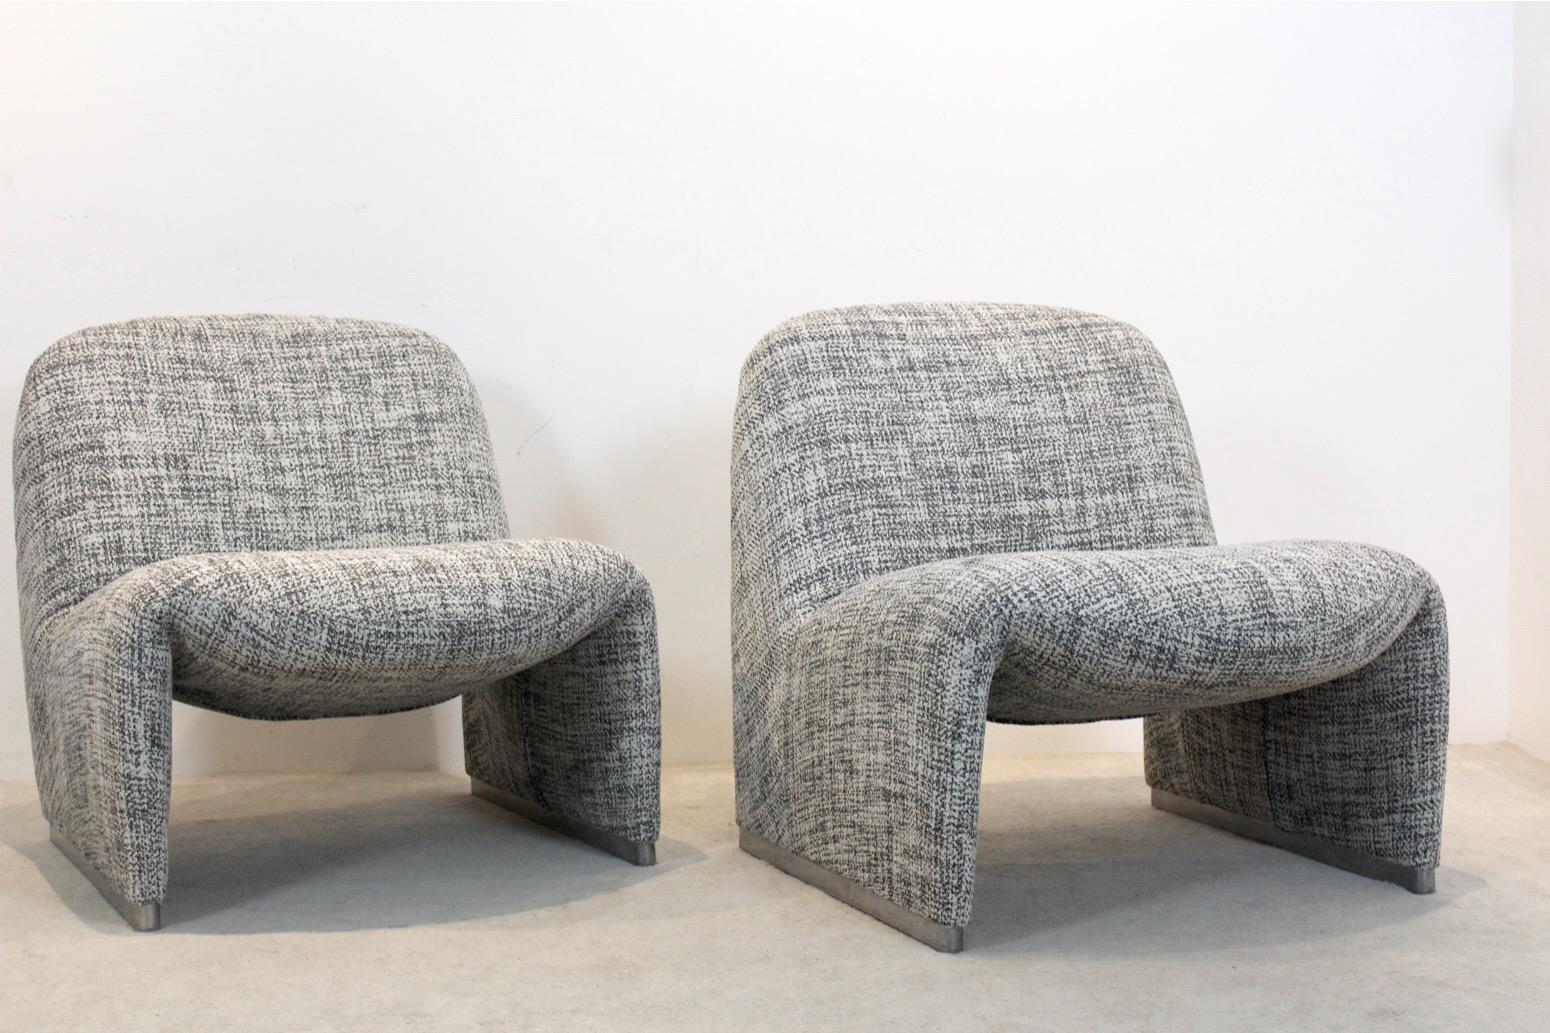 Diese skulpturalen Alky-Stühle wurden von Giancarlo Piretti in den 70er Jahren für Artifort entworfen. Piretti ist bekannt für seine innovativen und funktionalen Möbelentwürfe, insbesondere im Bereich der ergonomischen Sitzmöbel. Der Alky-Stuhl